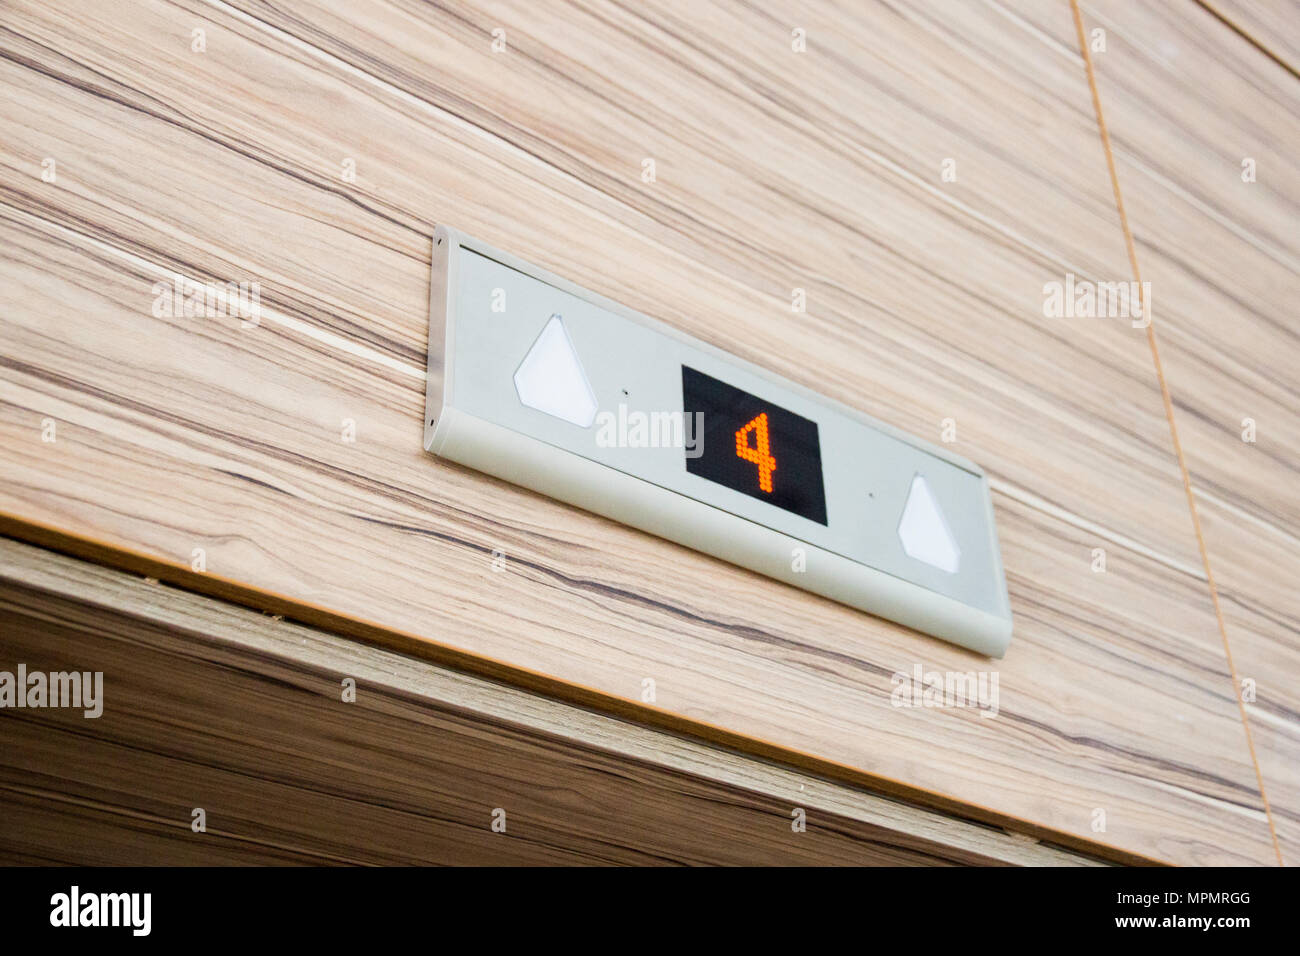 Anzahl der vierten Etage auf LED-Bildschirm elektronische Digitalanzeige oben Aufzugstür Stockfoto